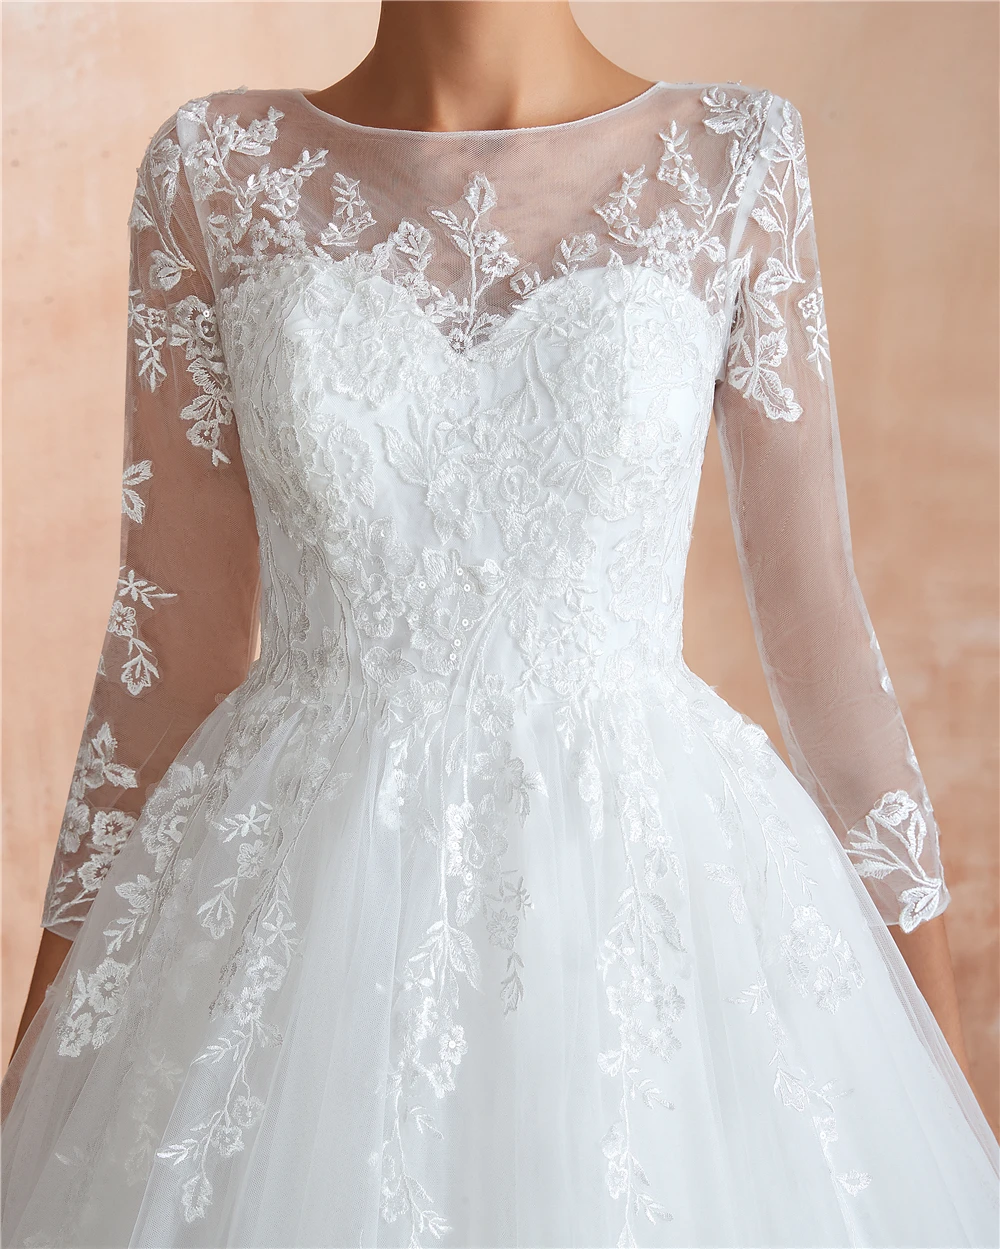 Lanvendia 2020 Chapel Train Lace Applique Wedding Dresses Long Sleeve Tulle Wedding Gowns for Bride Plus Size Robe De Mariee